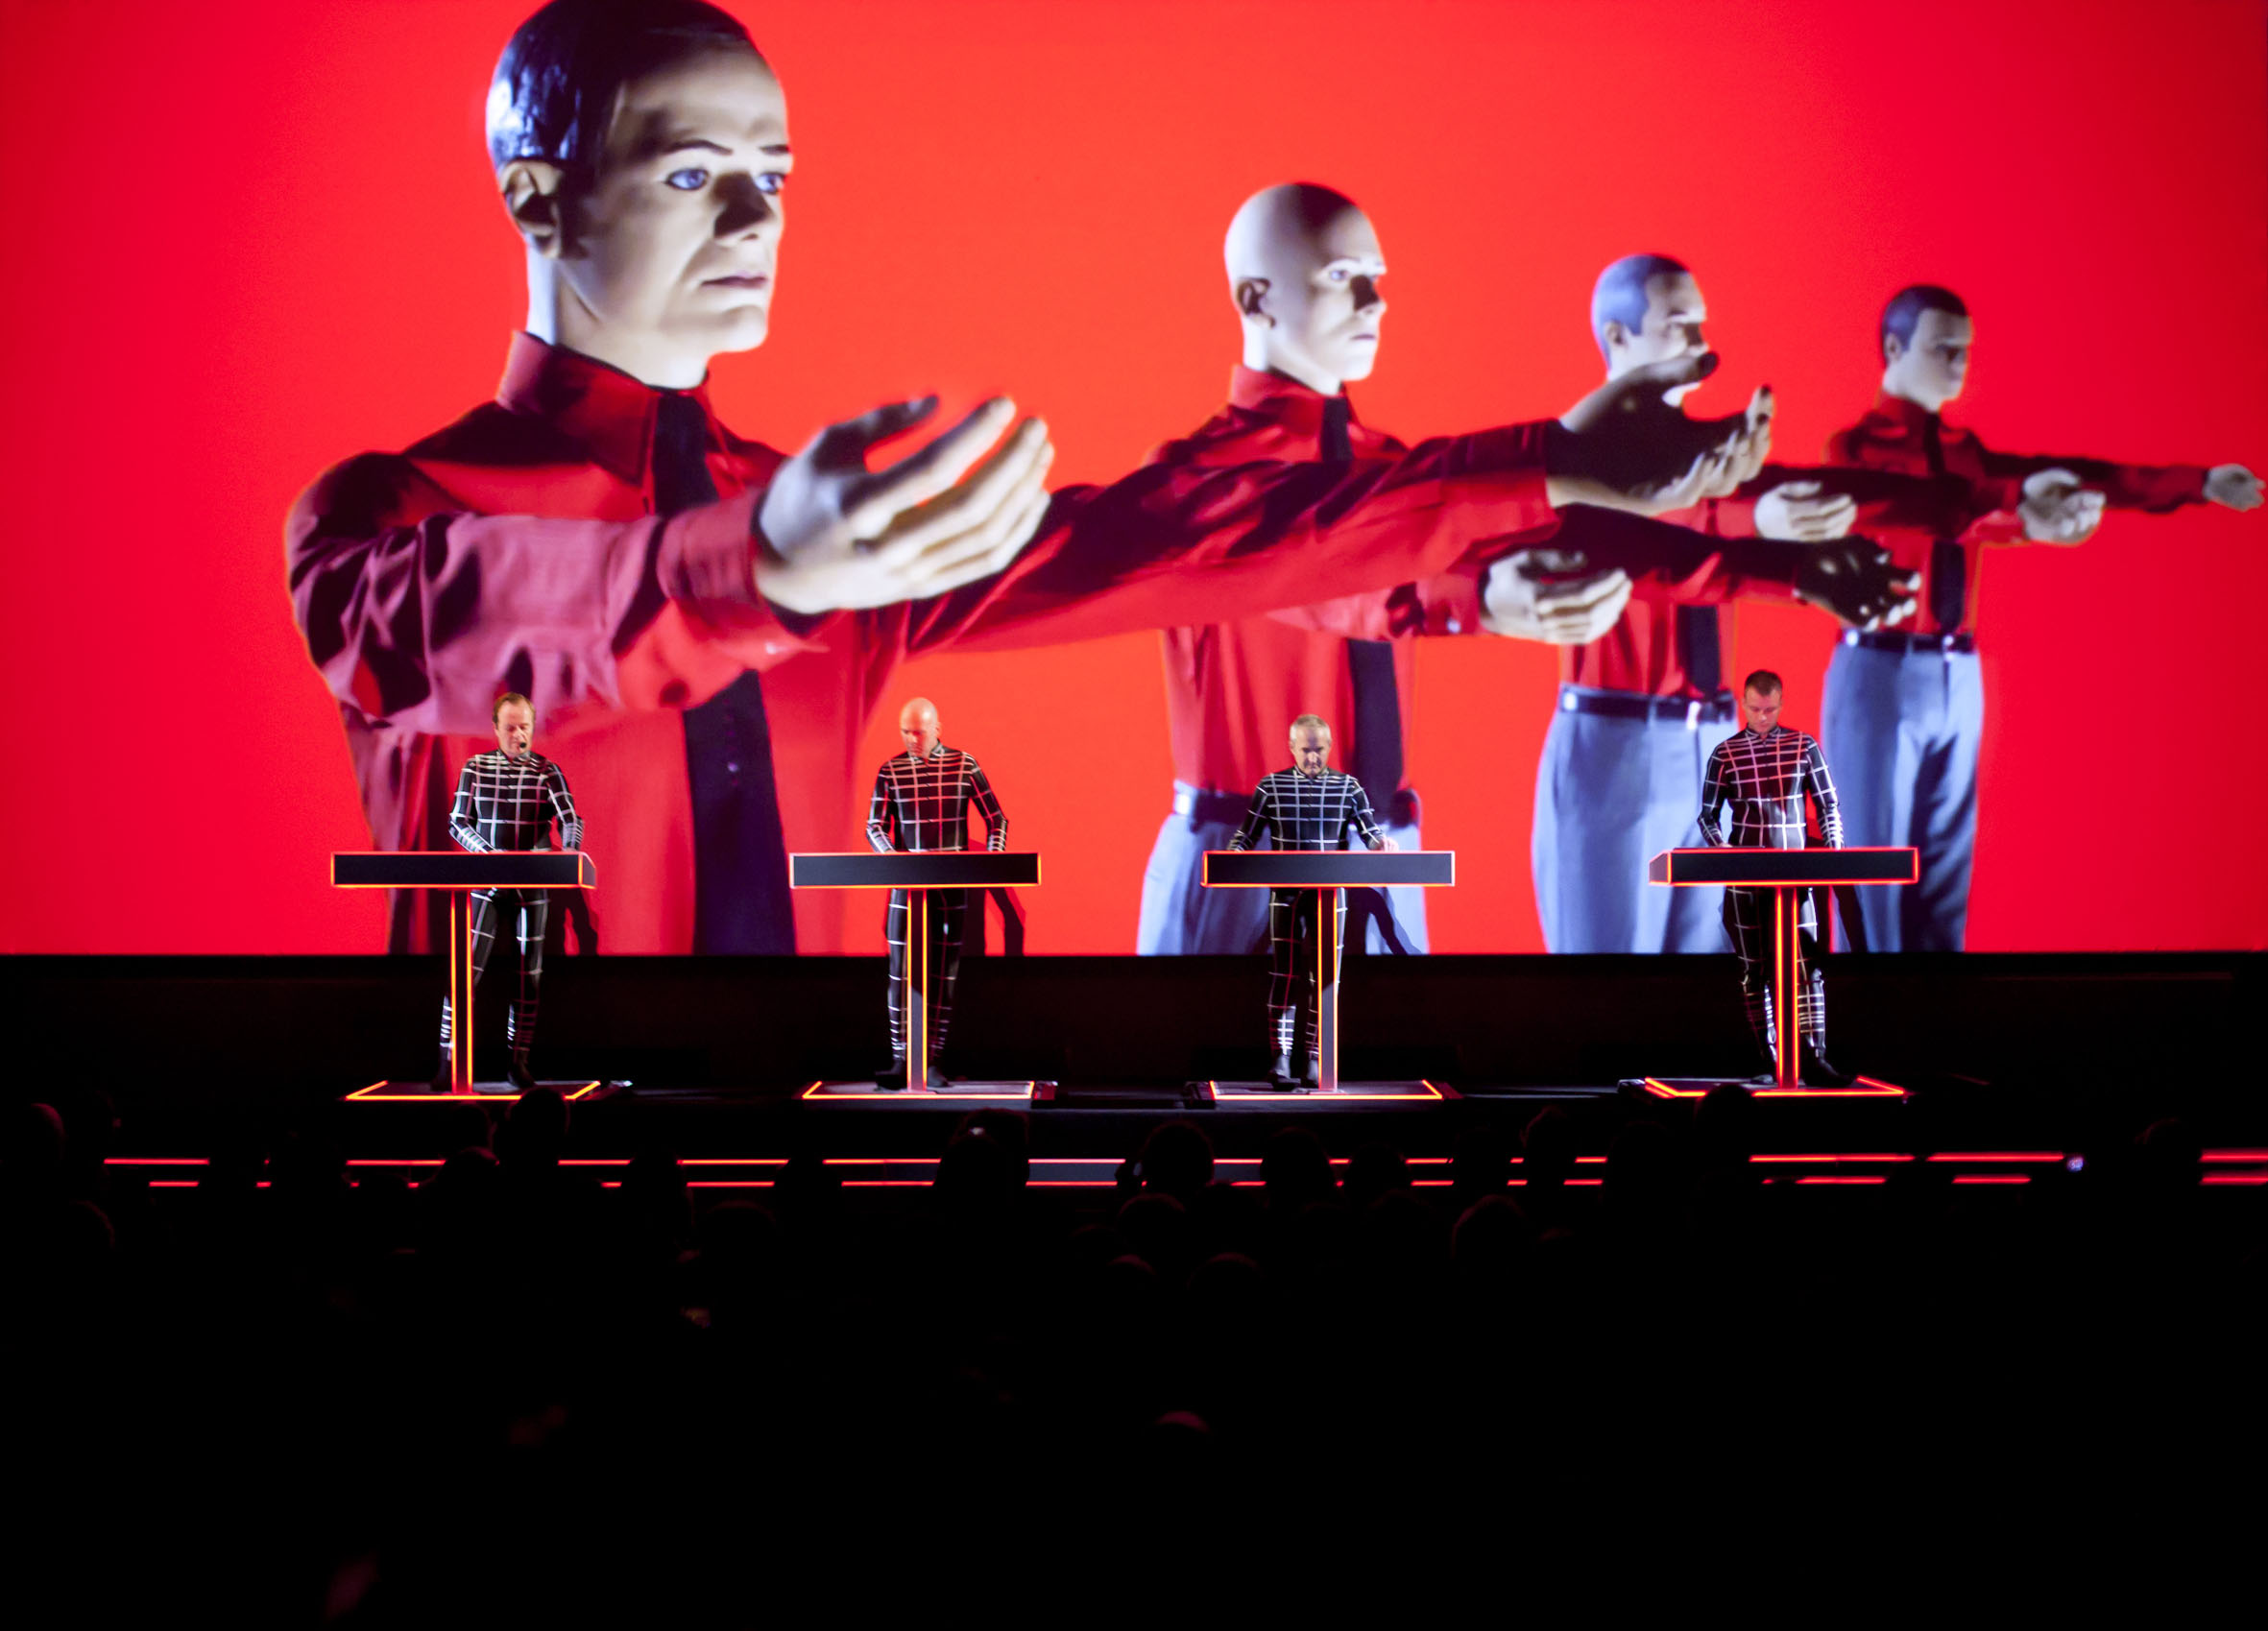 La banda alemana Kraftwerk sacará disco en vivo con videos 3D